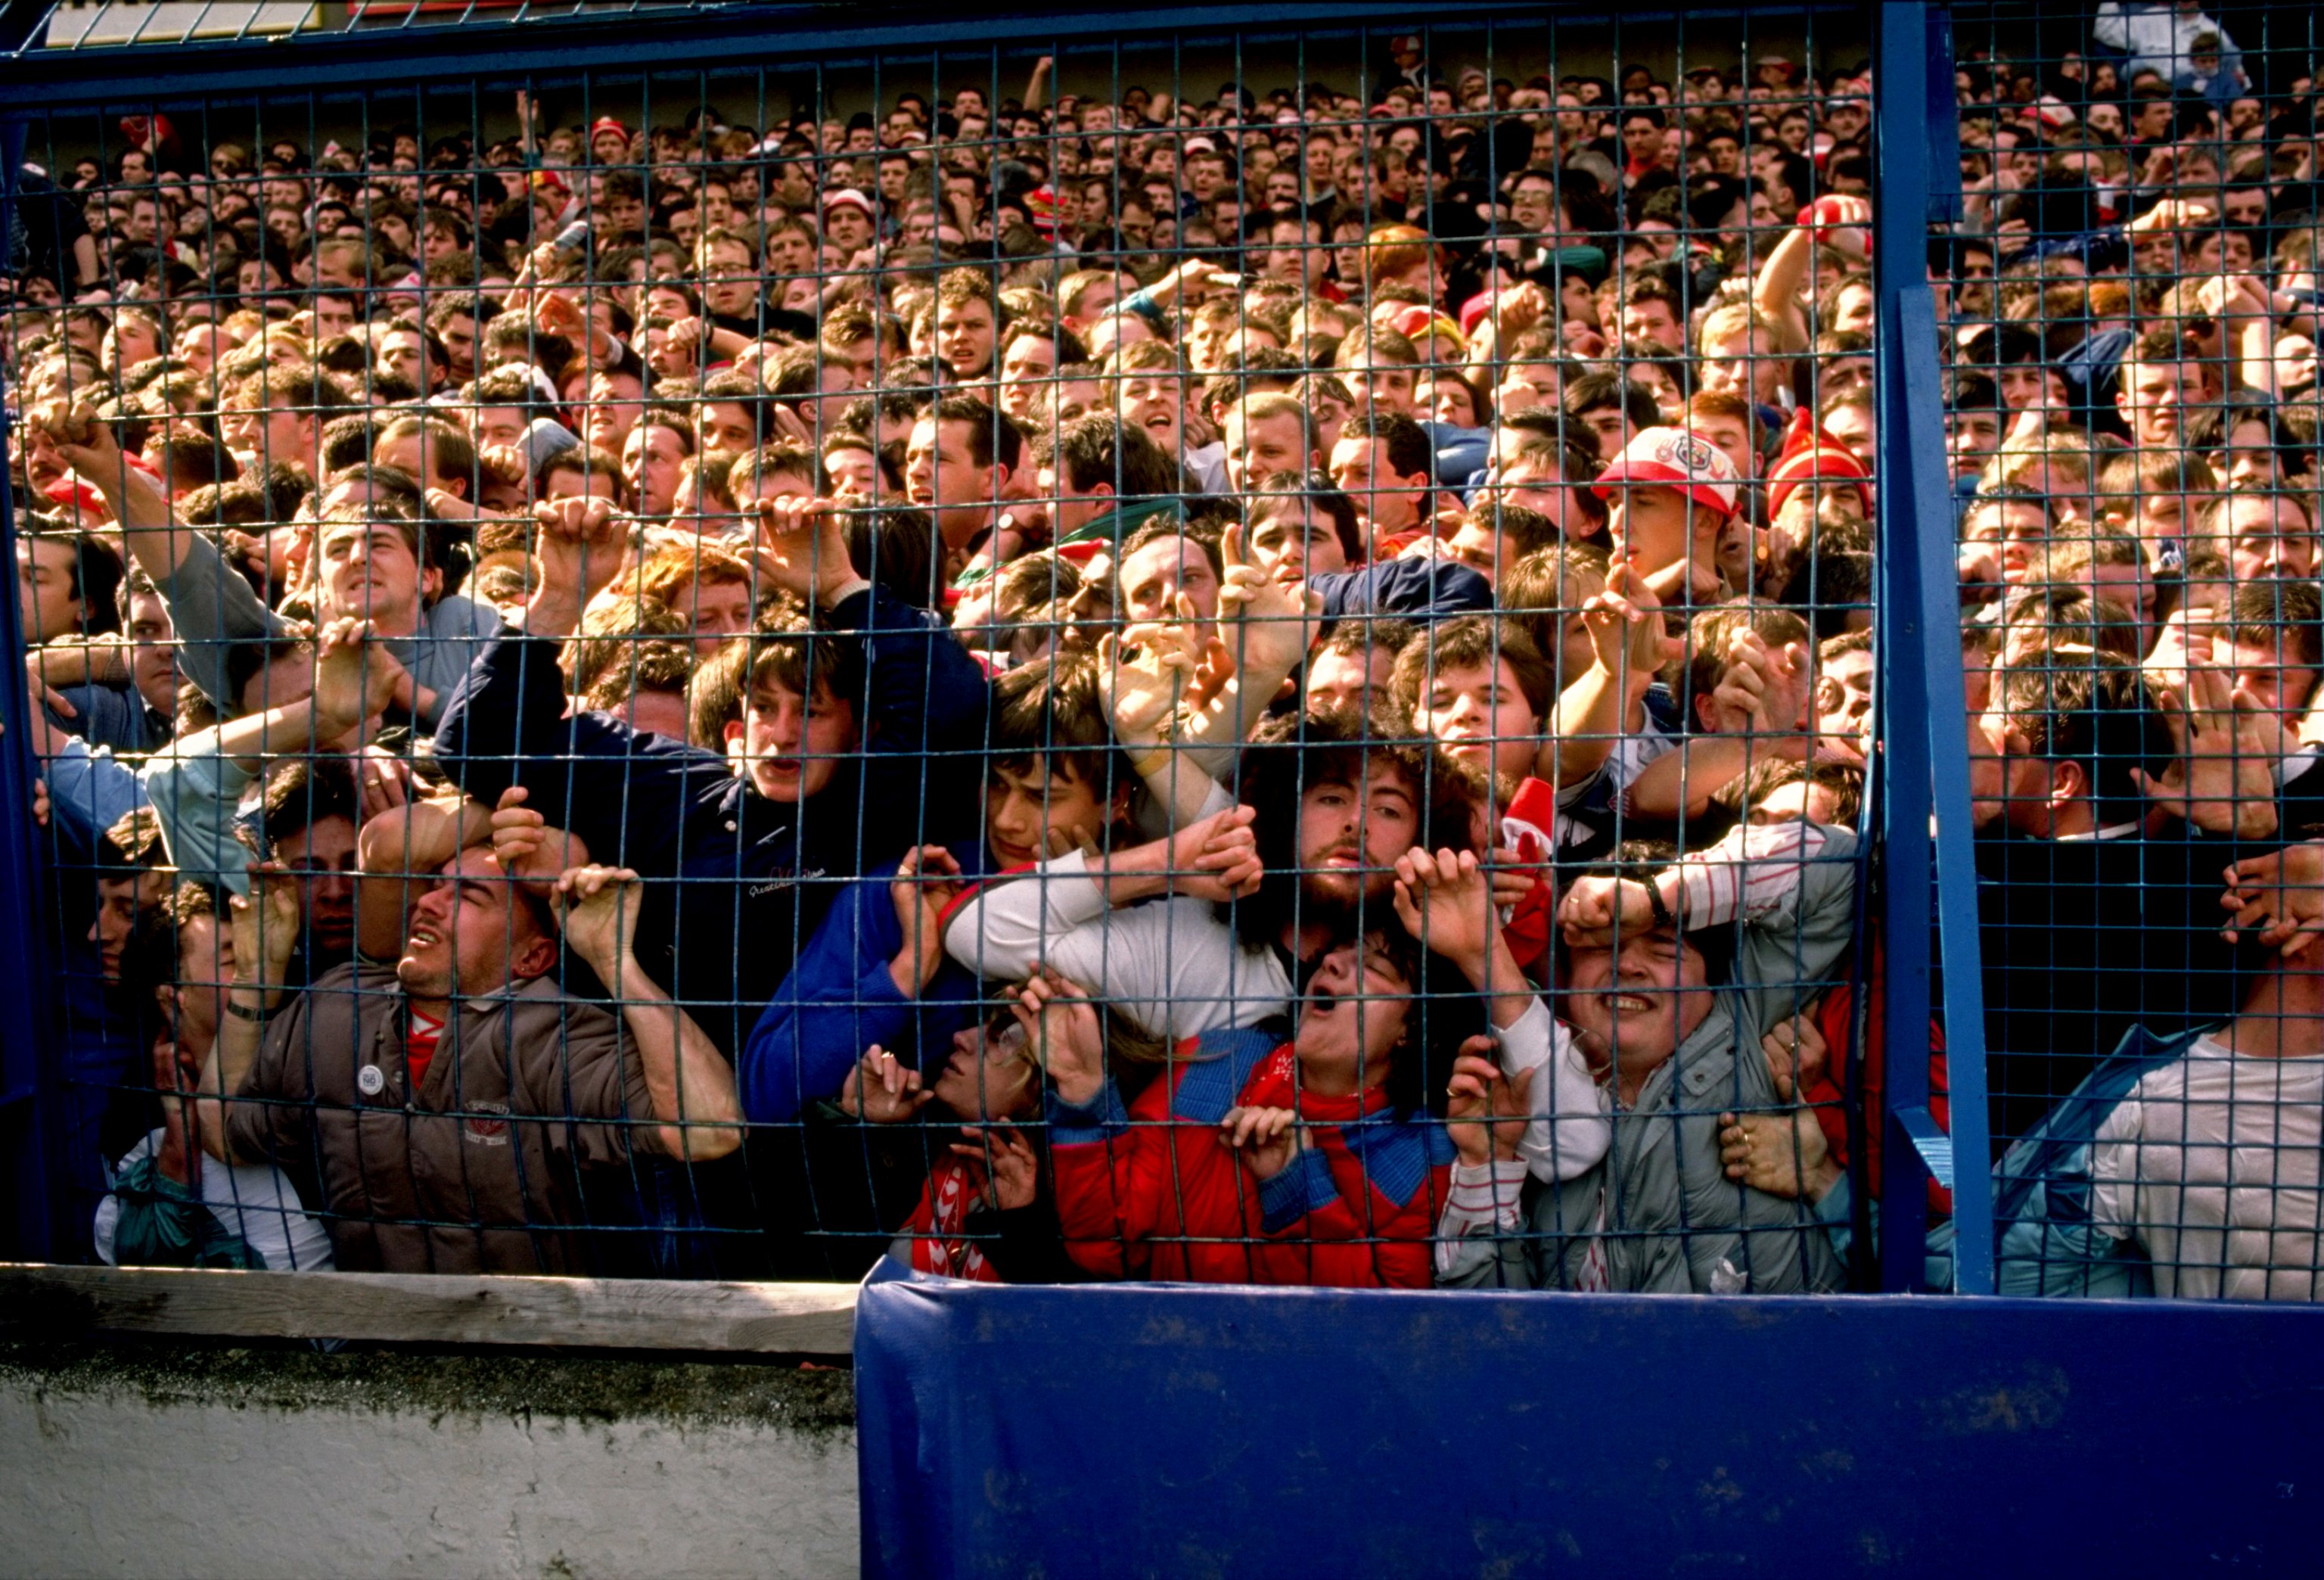 События 15 апреля. Стадион Хиллсборо в Шеффилде, 1989. Стадион Хиллсборо Шеффилд. Давка на стадионе Хиллсборо в Шеффилде 1989. 15 Апреля 1989 года на стадионе Хиллсборо в Англии.